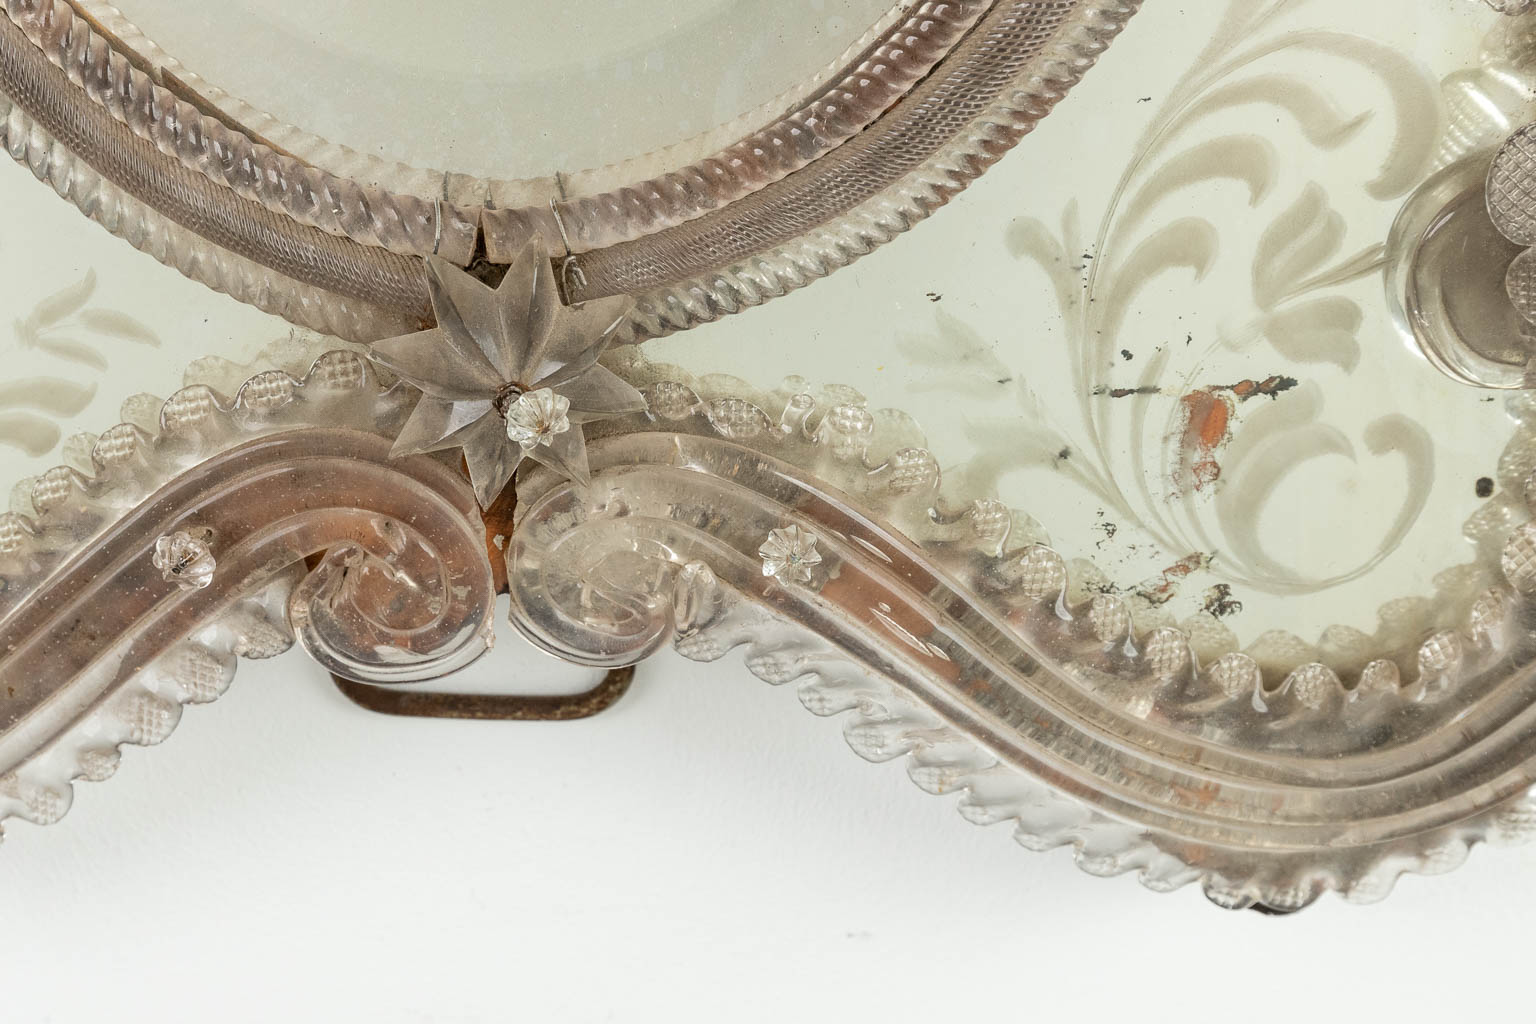 A table mirror, Venetian glass, circa 1900. (W:44 x H:67 cm)